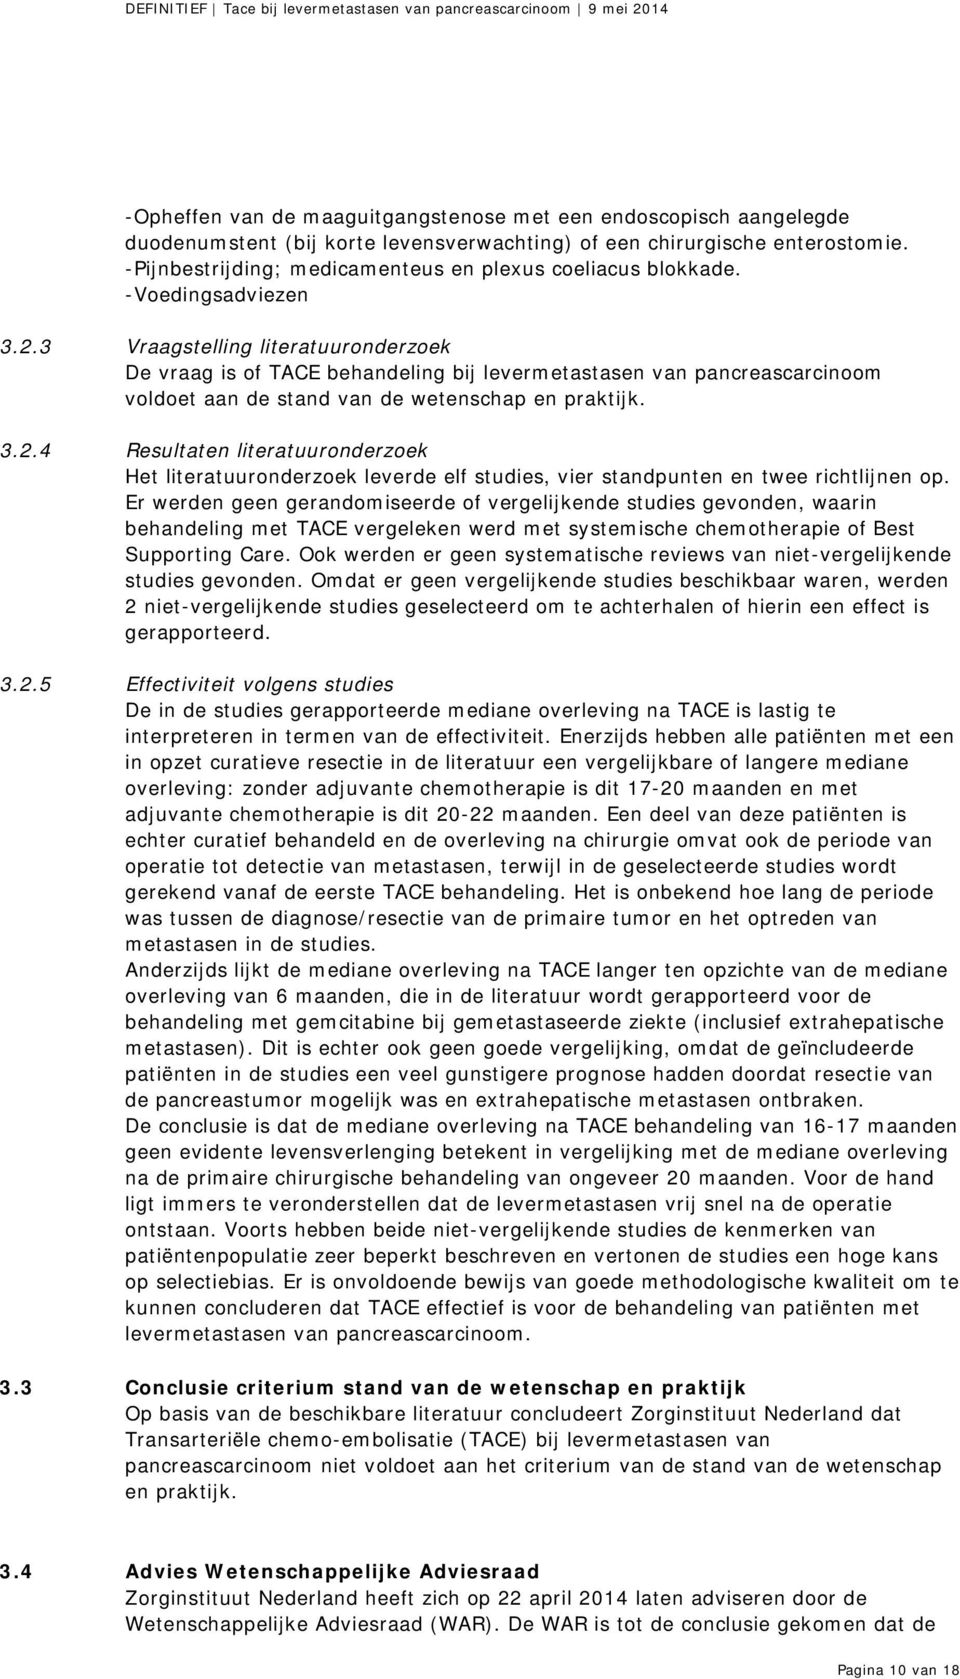 3 Vraagstelling literatuuronderzoek De vraag is of TACE behandeling bij levermetastasen van pancreascarcinoom voldoet aan de stand van de wetenschap en praktijk. 3.2.